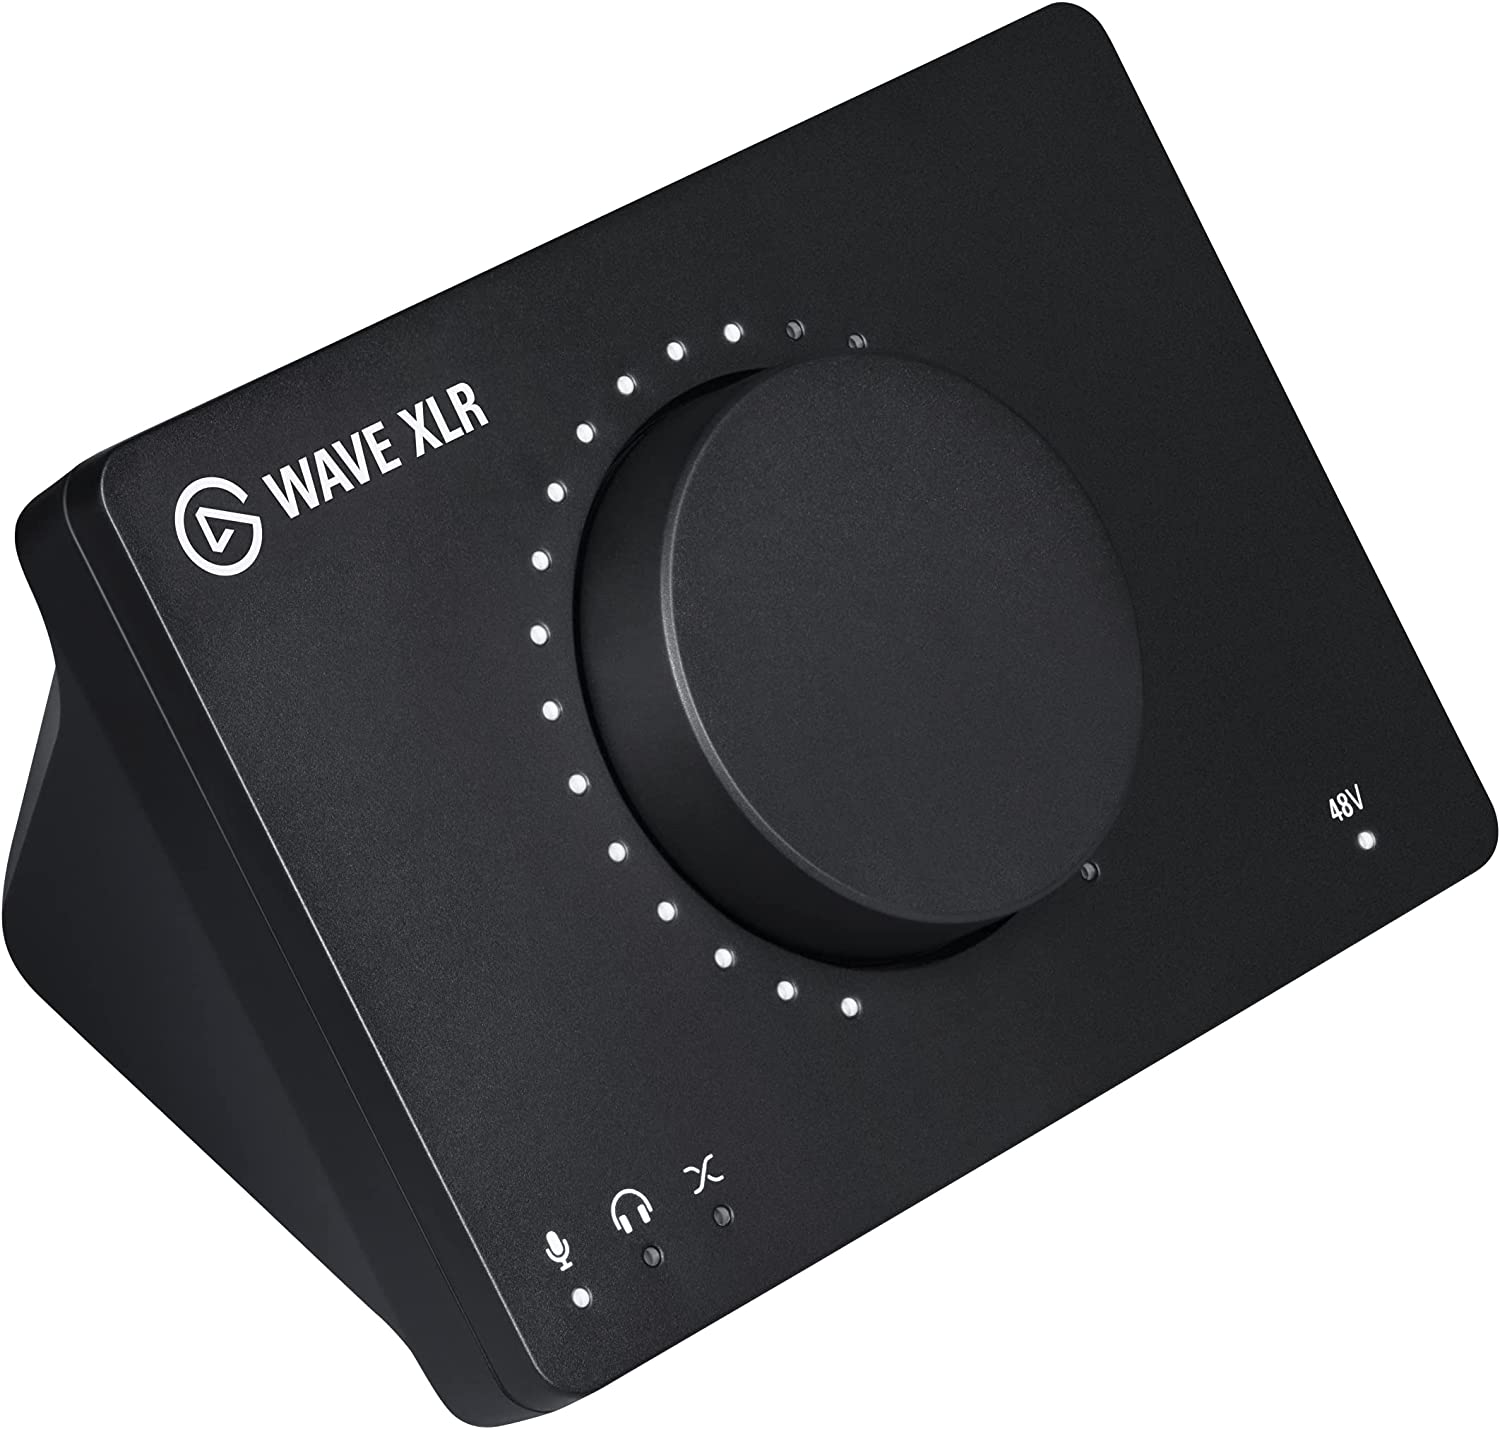 Elgato Wave XLR Audio Mixer -  $119.99 + Free Shipping